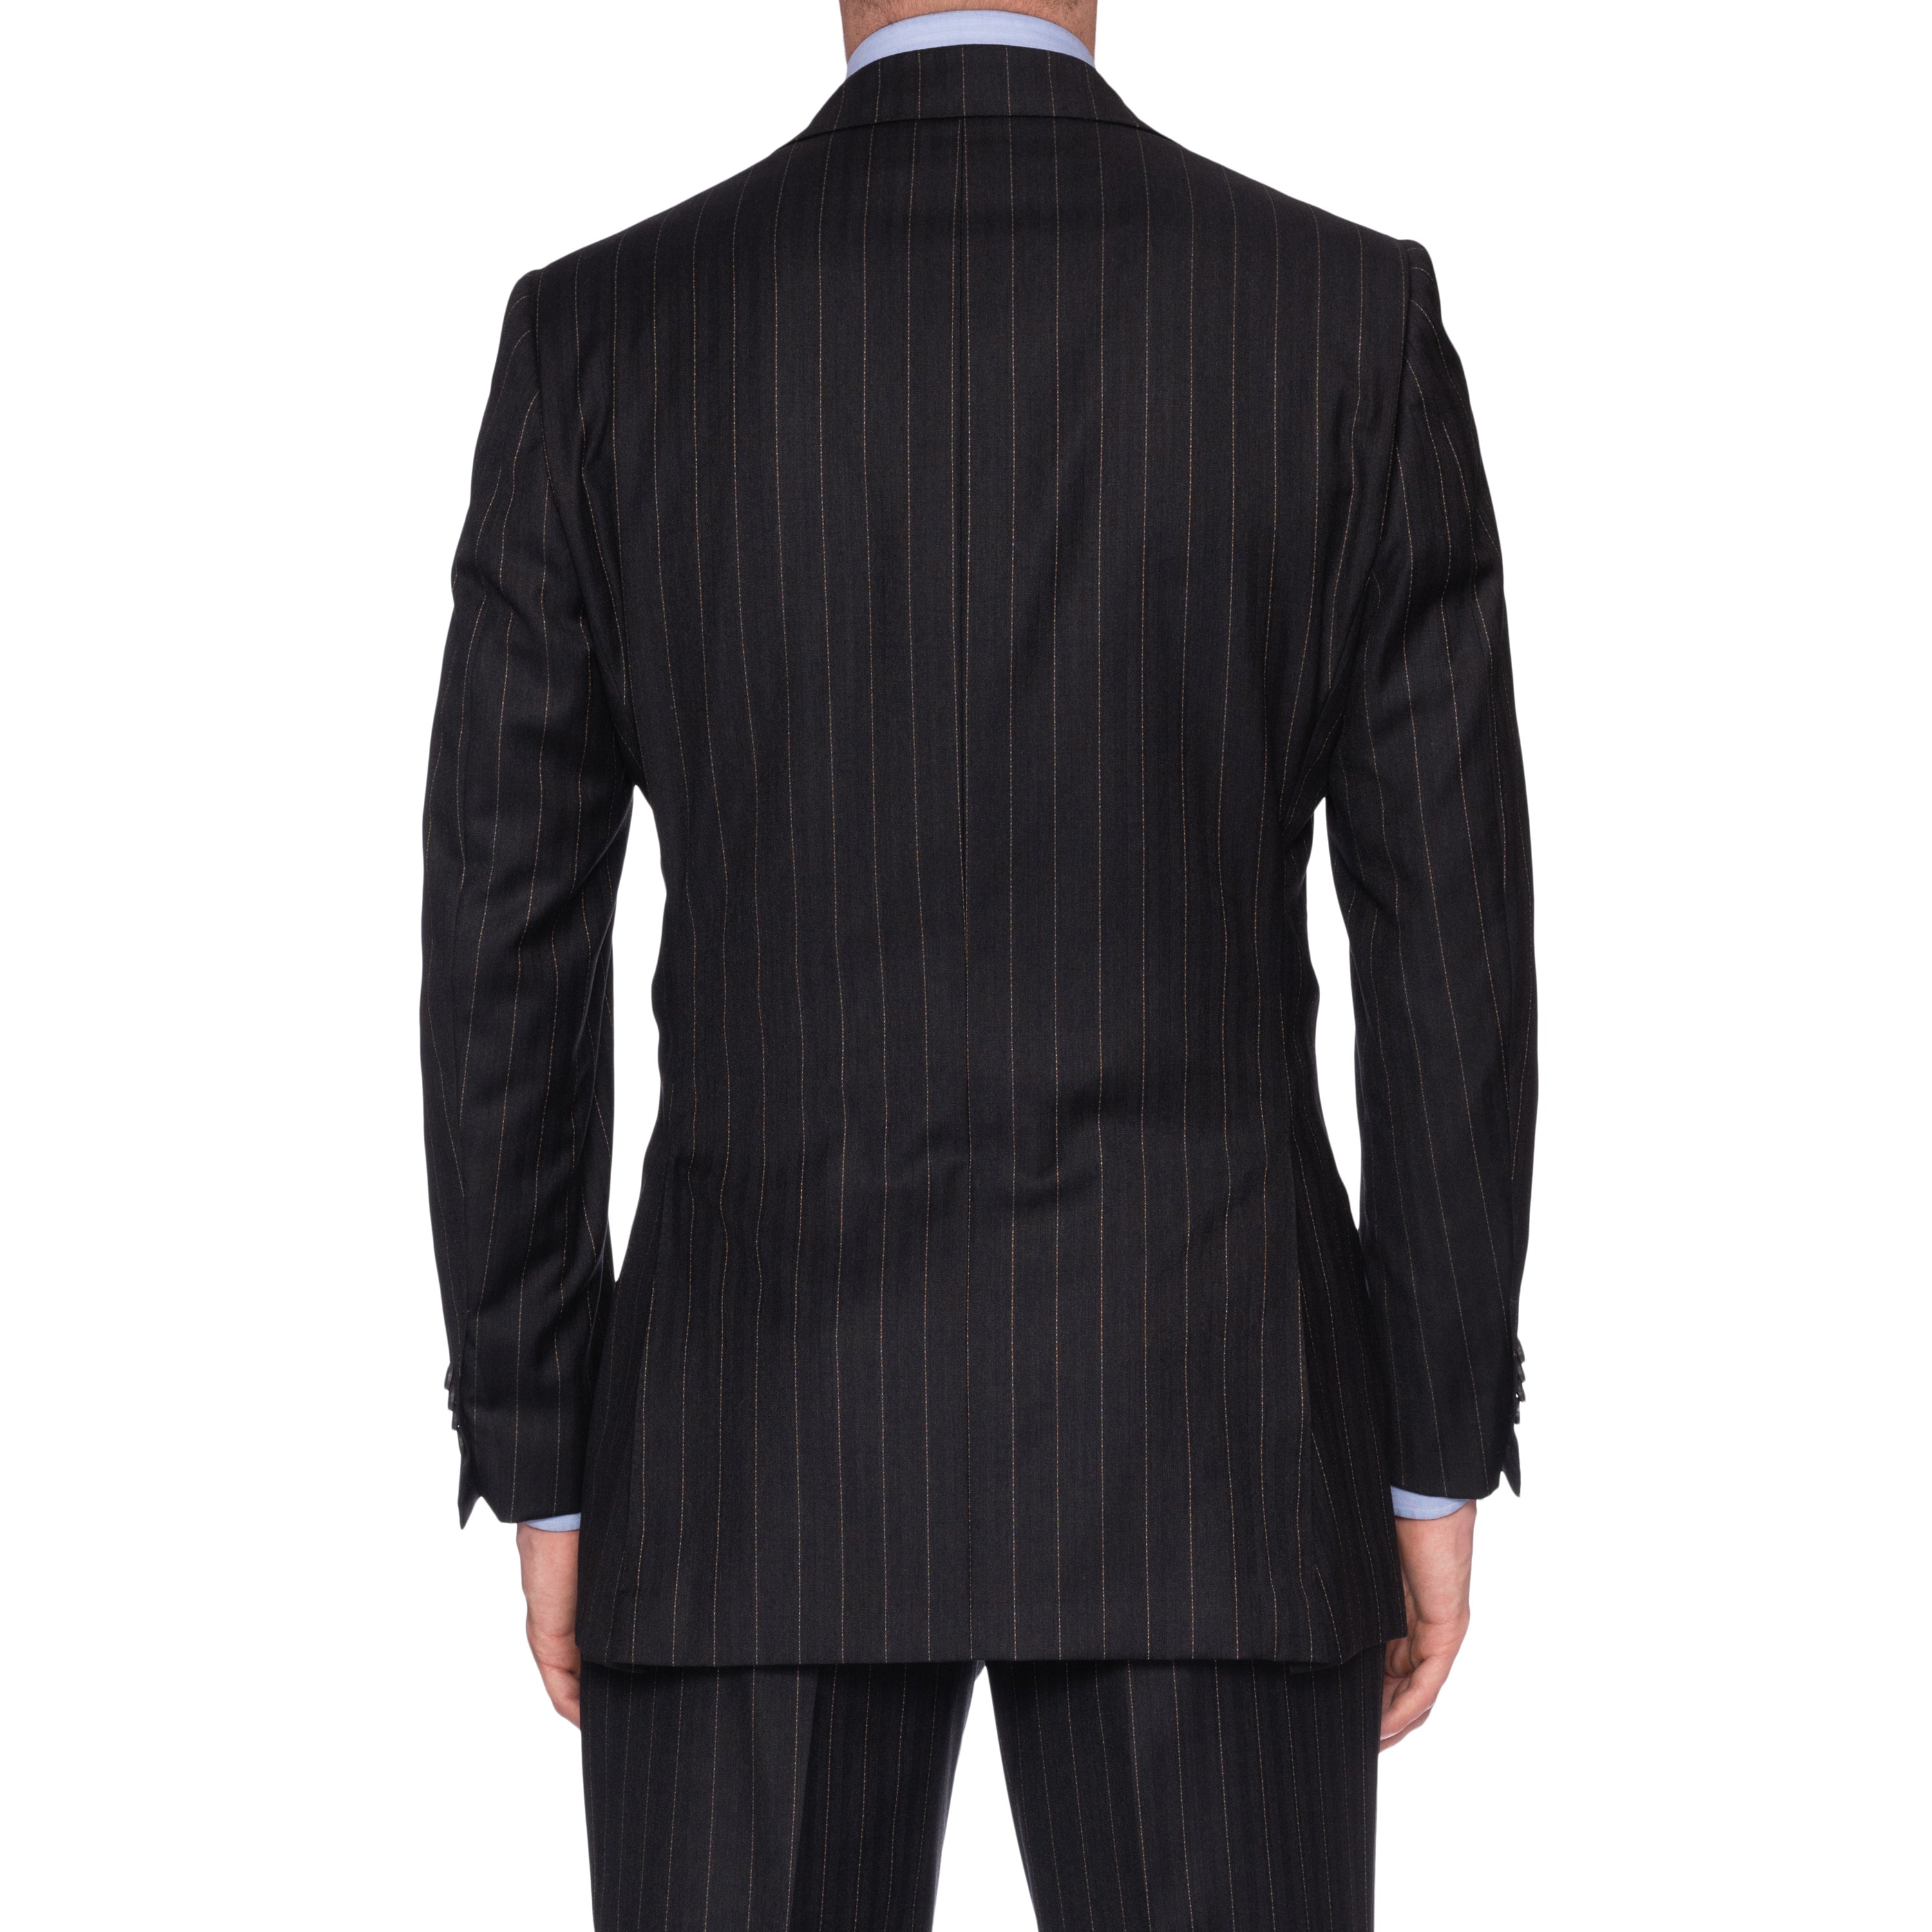 SARTORIA CASTANGIA Dark Gray Herringbone Wool Super 120's Suit EU 50 NEW US 40 CASTANGIA